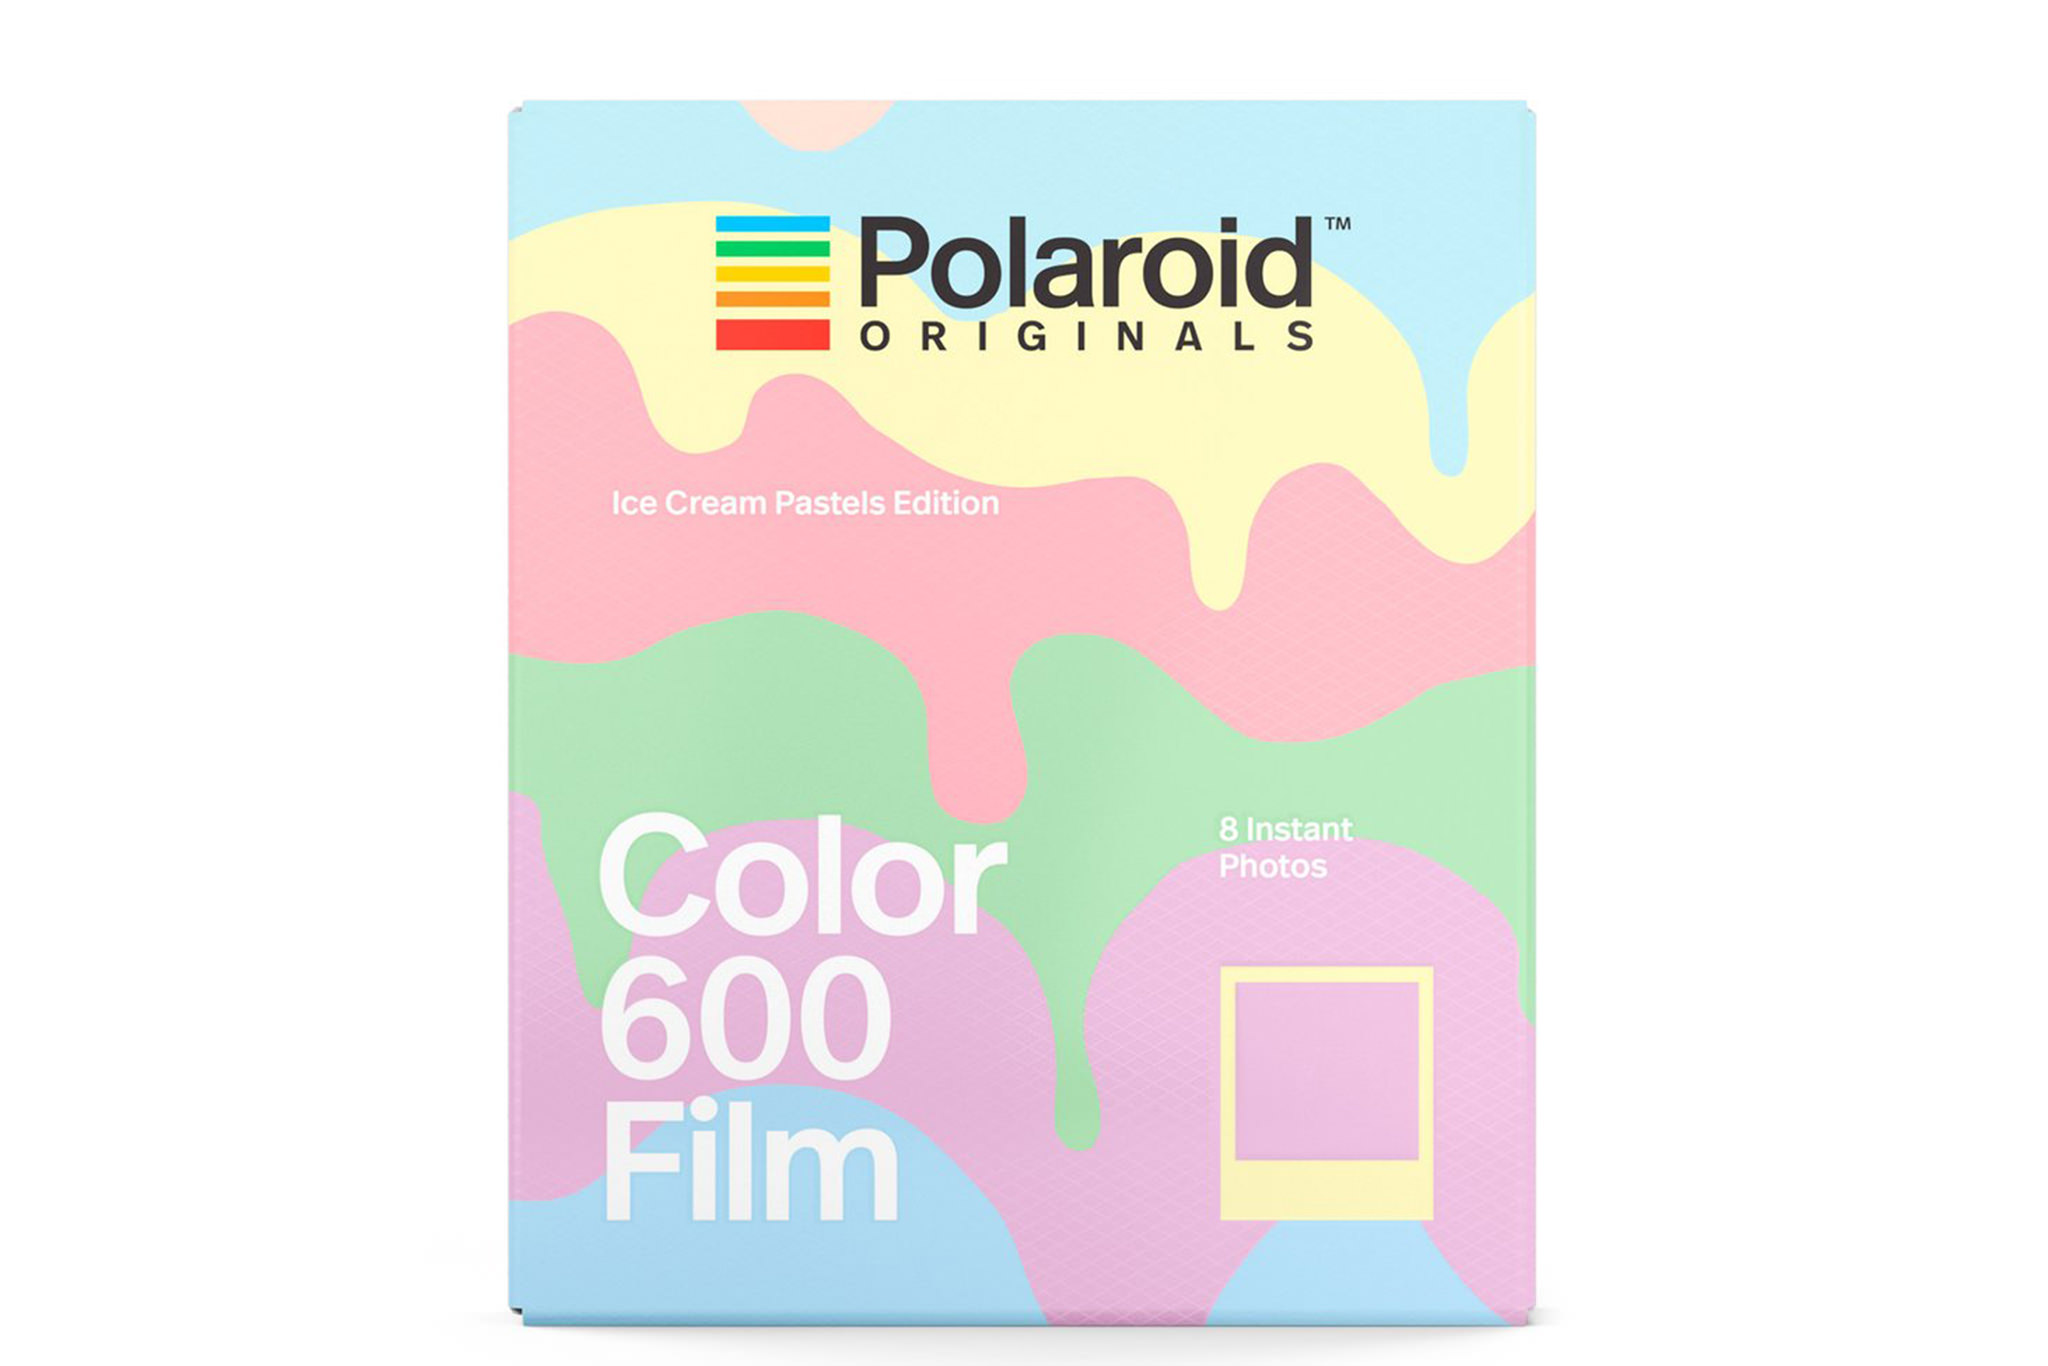 polaroid-originals-color-instant-film-for-600-ice-cream-pastels-edition